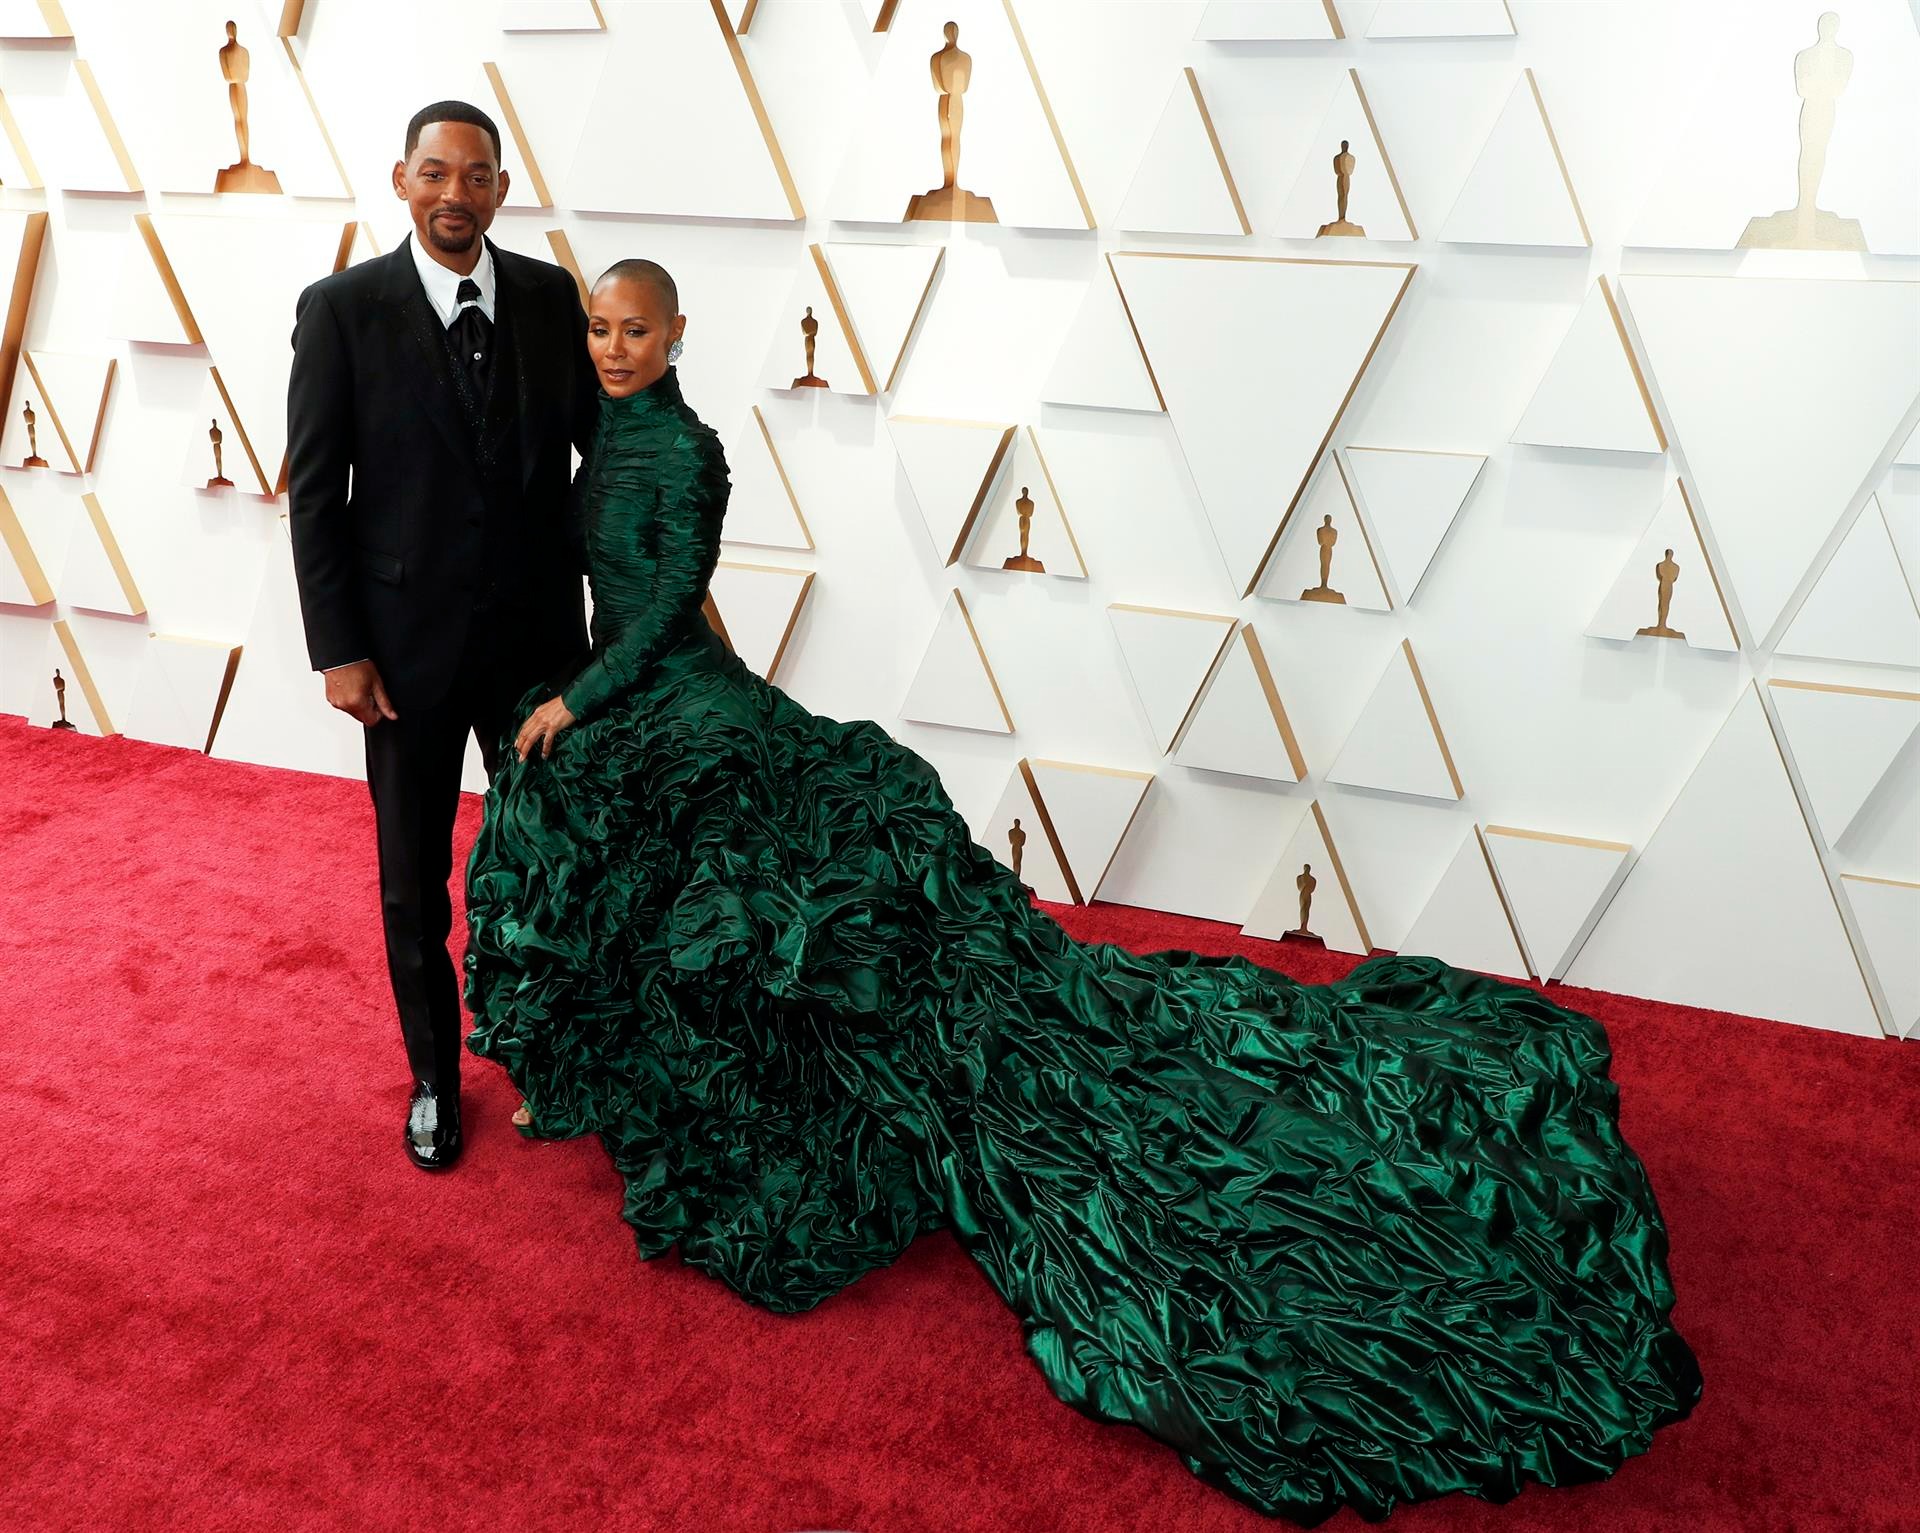 Will Smith y Jada Pinkett Smith posan en la alfombra roja a su llegada a la entrega de los Premios Óscar hoy, en el Teatro Dolby de Los Ángeles, California (EE.UU.).  EFE/EPA/DAVID SWANSON